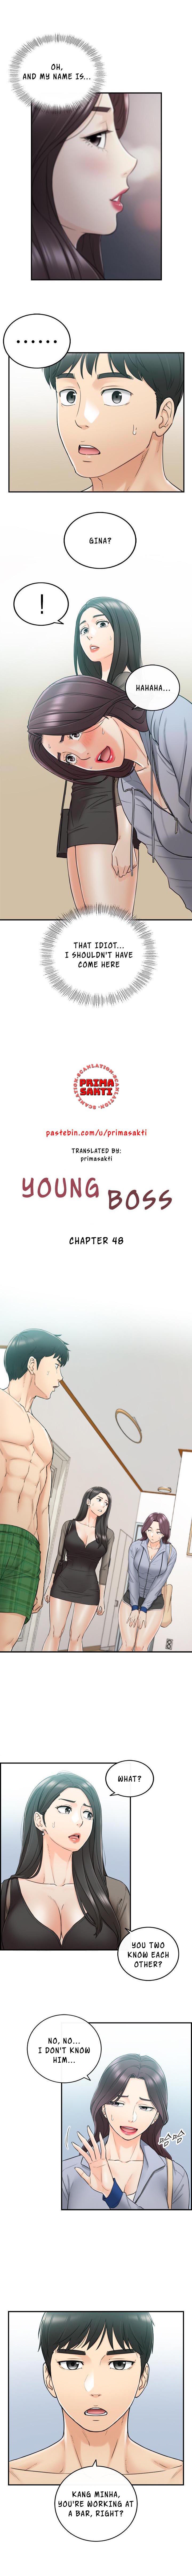 Young Boss Manhwa 01-73 378